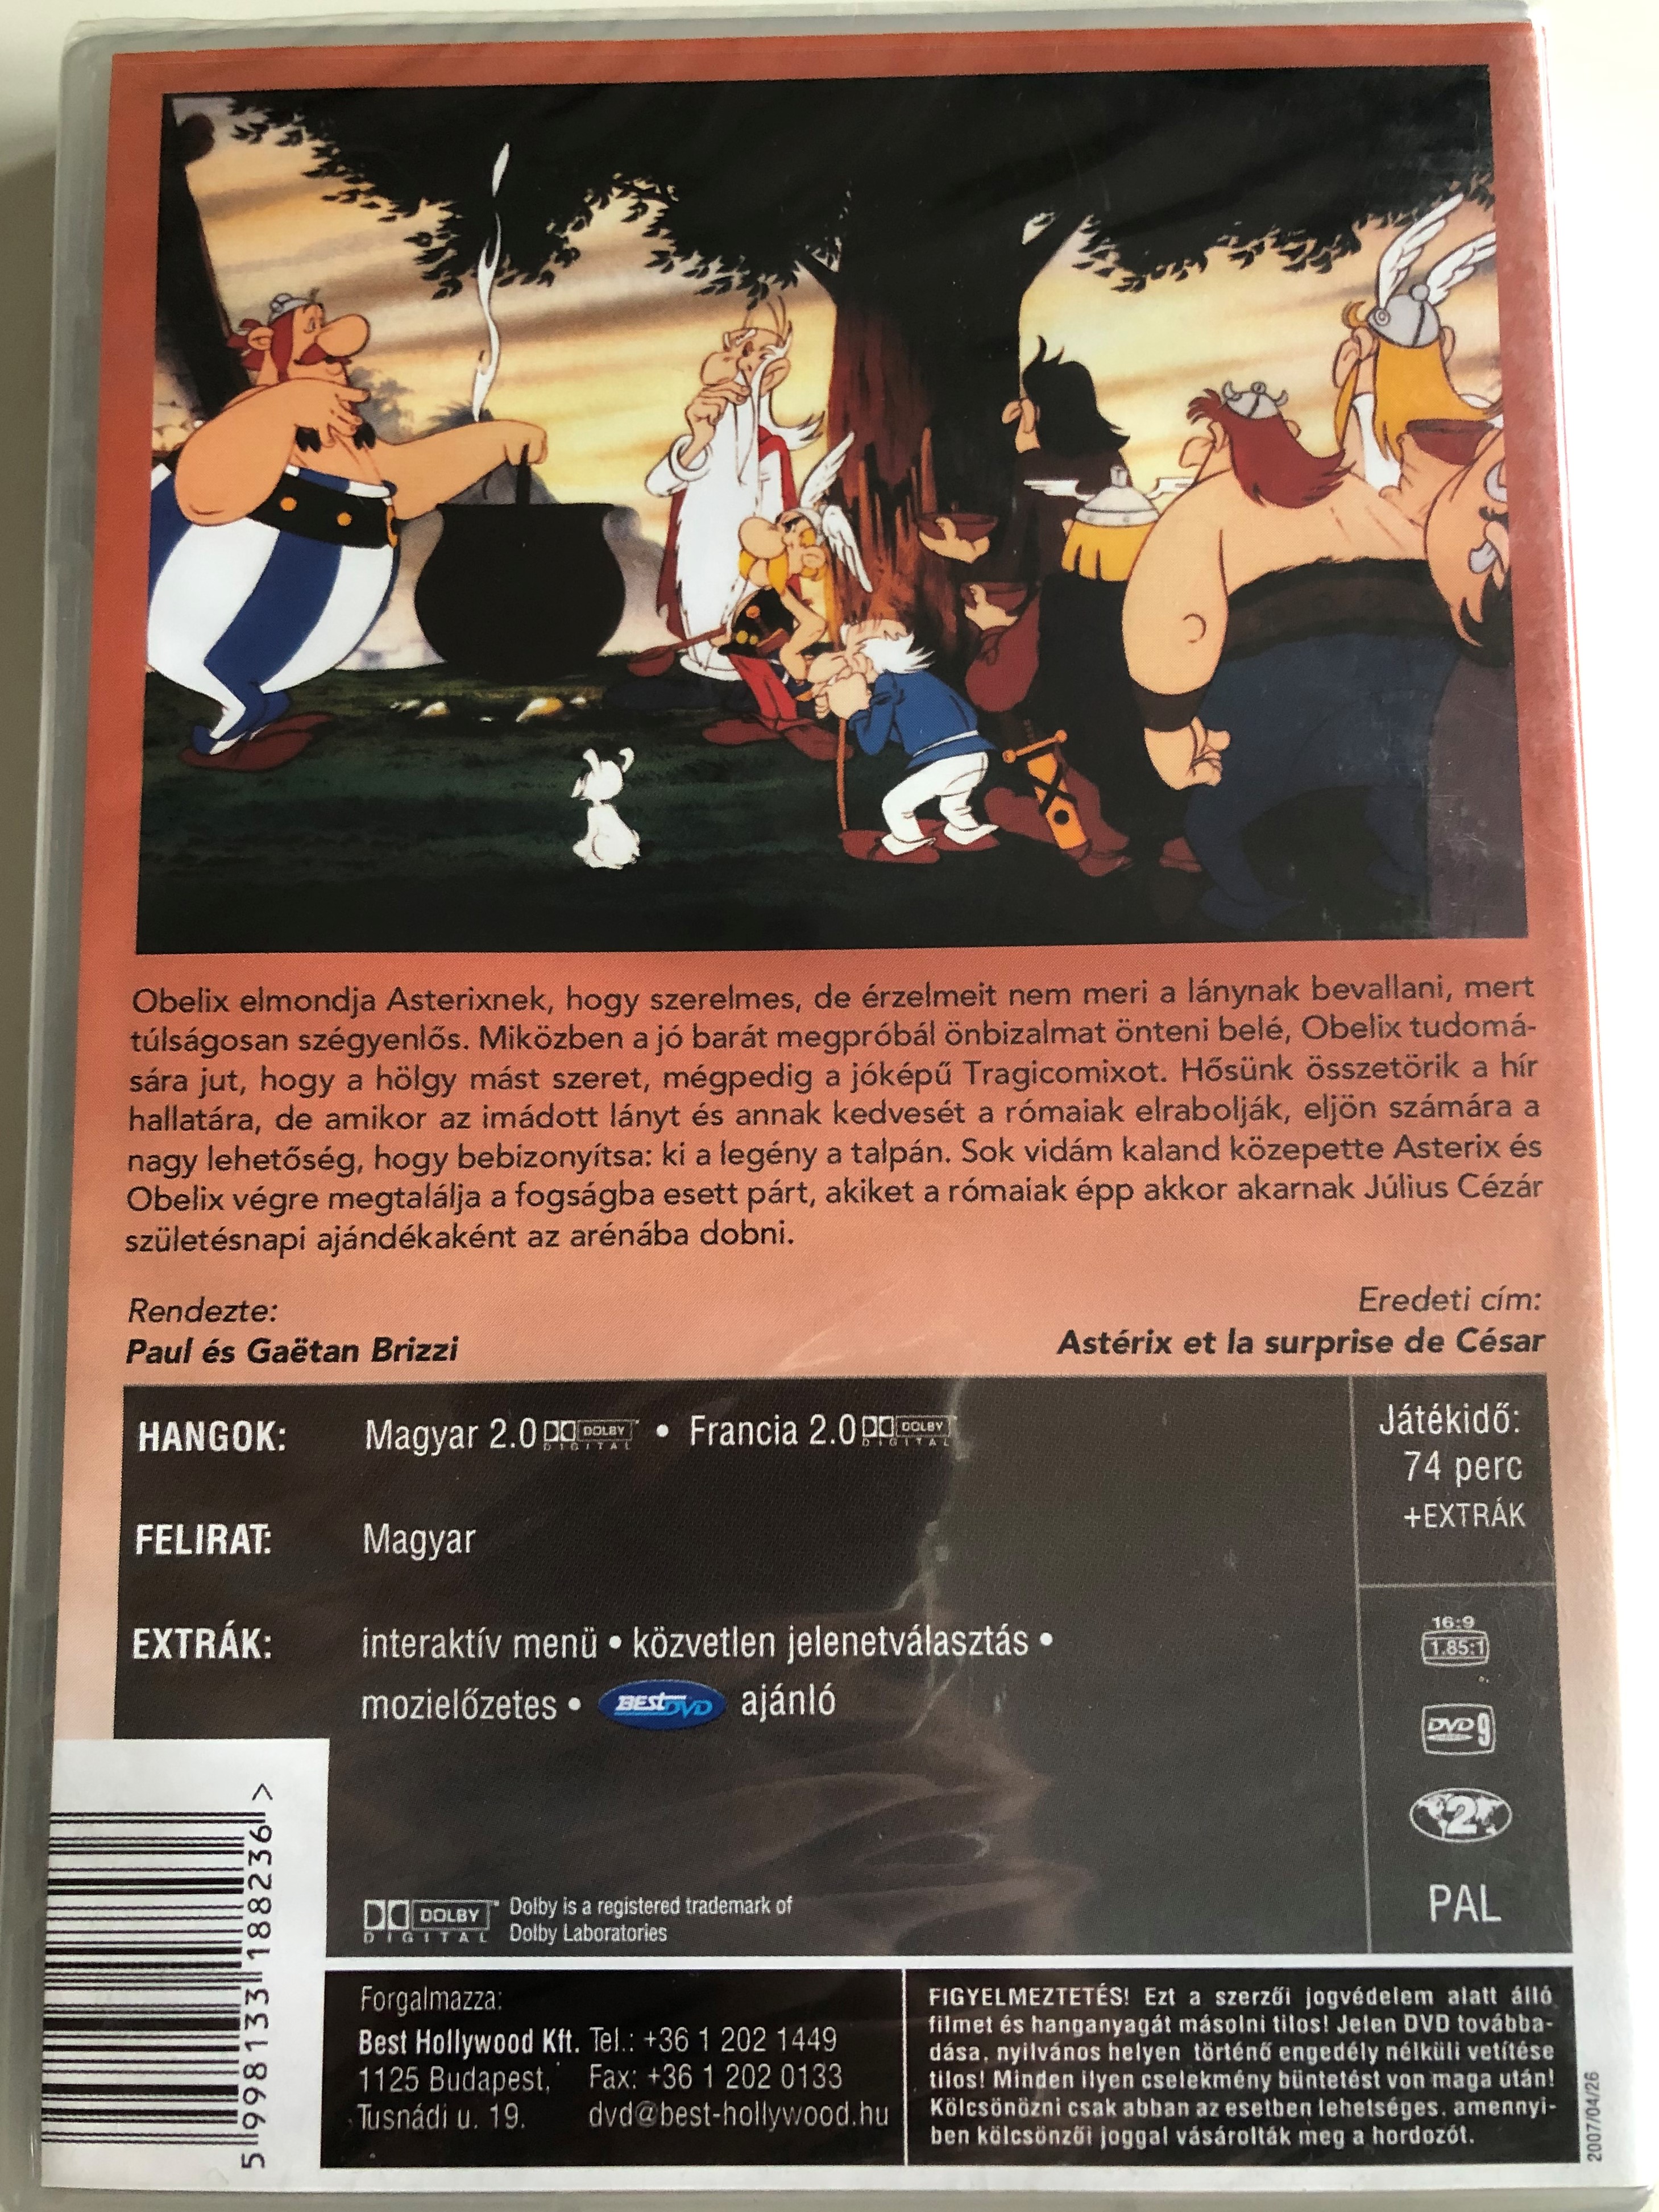 ast-rix-et-la-surprise-de-c-sar-dvd-1985-asterix-s-c-z-r-aj-nd-ka-2.jpg